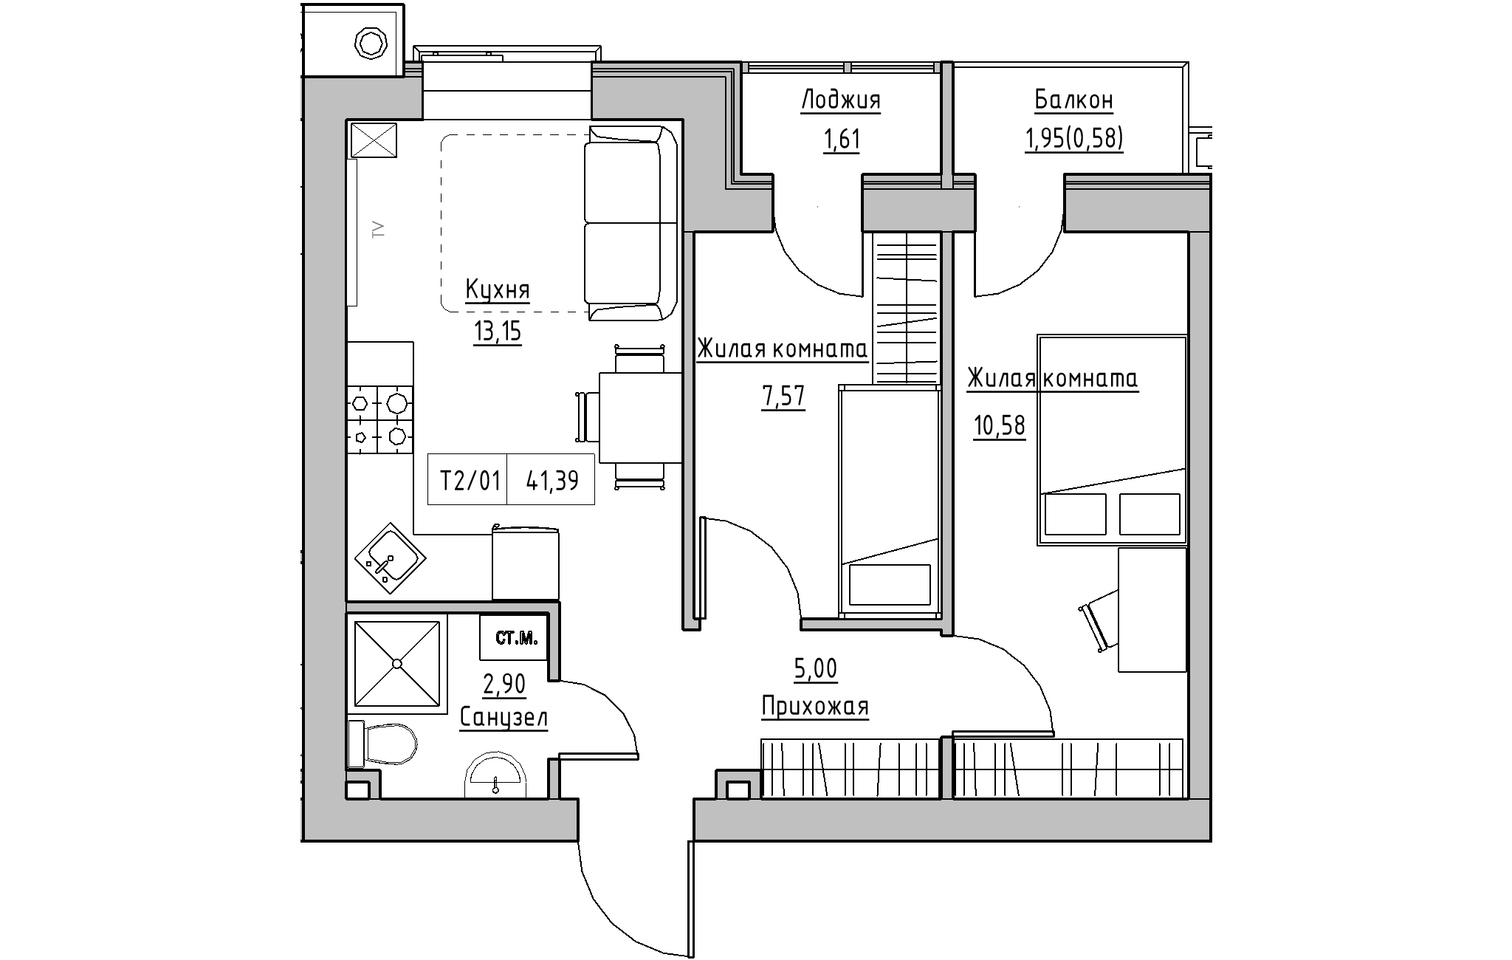 Планування 2-к квартира площею 41.39м2, KS-013-03/0009.